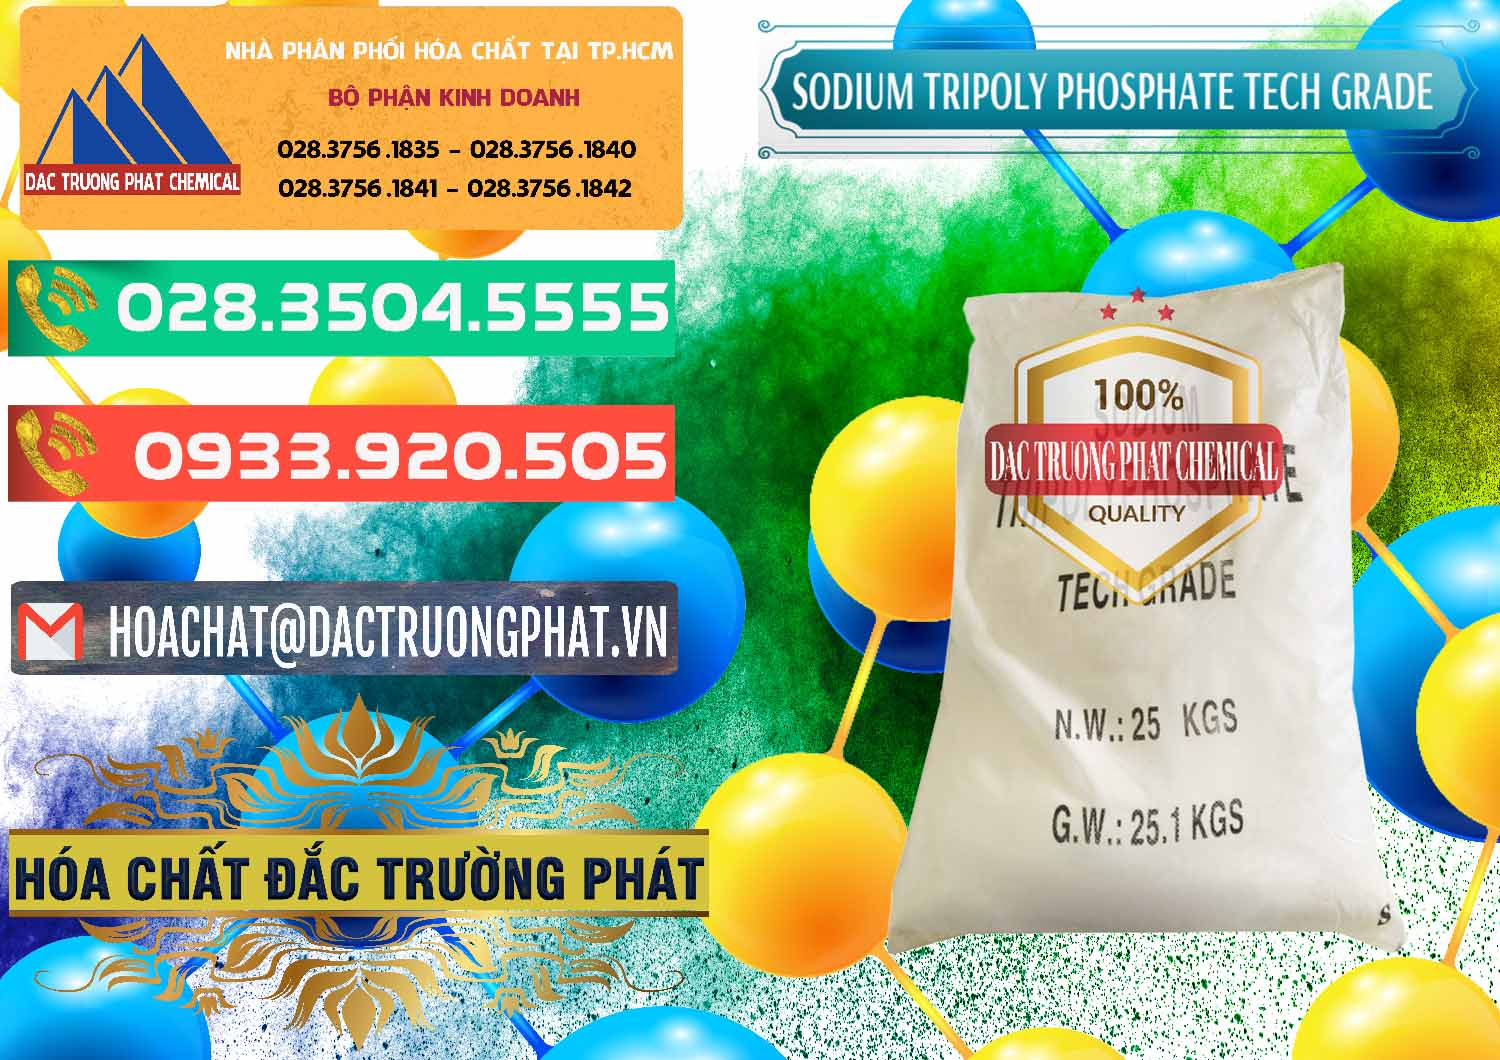 Chuyên nhập khẩu ( bán ) Sodium Tripoly Phosphate - STPP Tech Grade Trung Quốc China - 0453 - Cty chuyên phân phối _ cung ứng hóa chất tại TP.HCM - congtyhoachat.com.vn